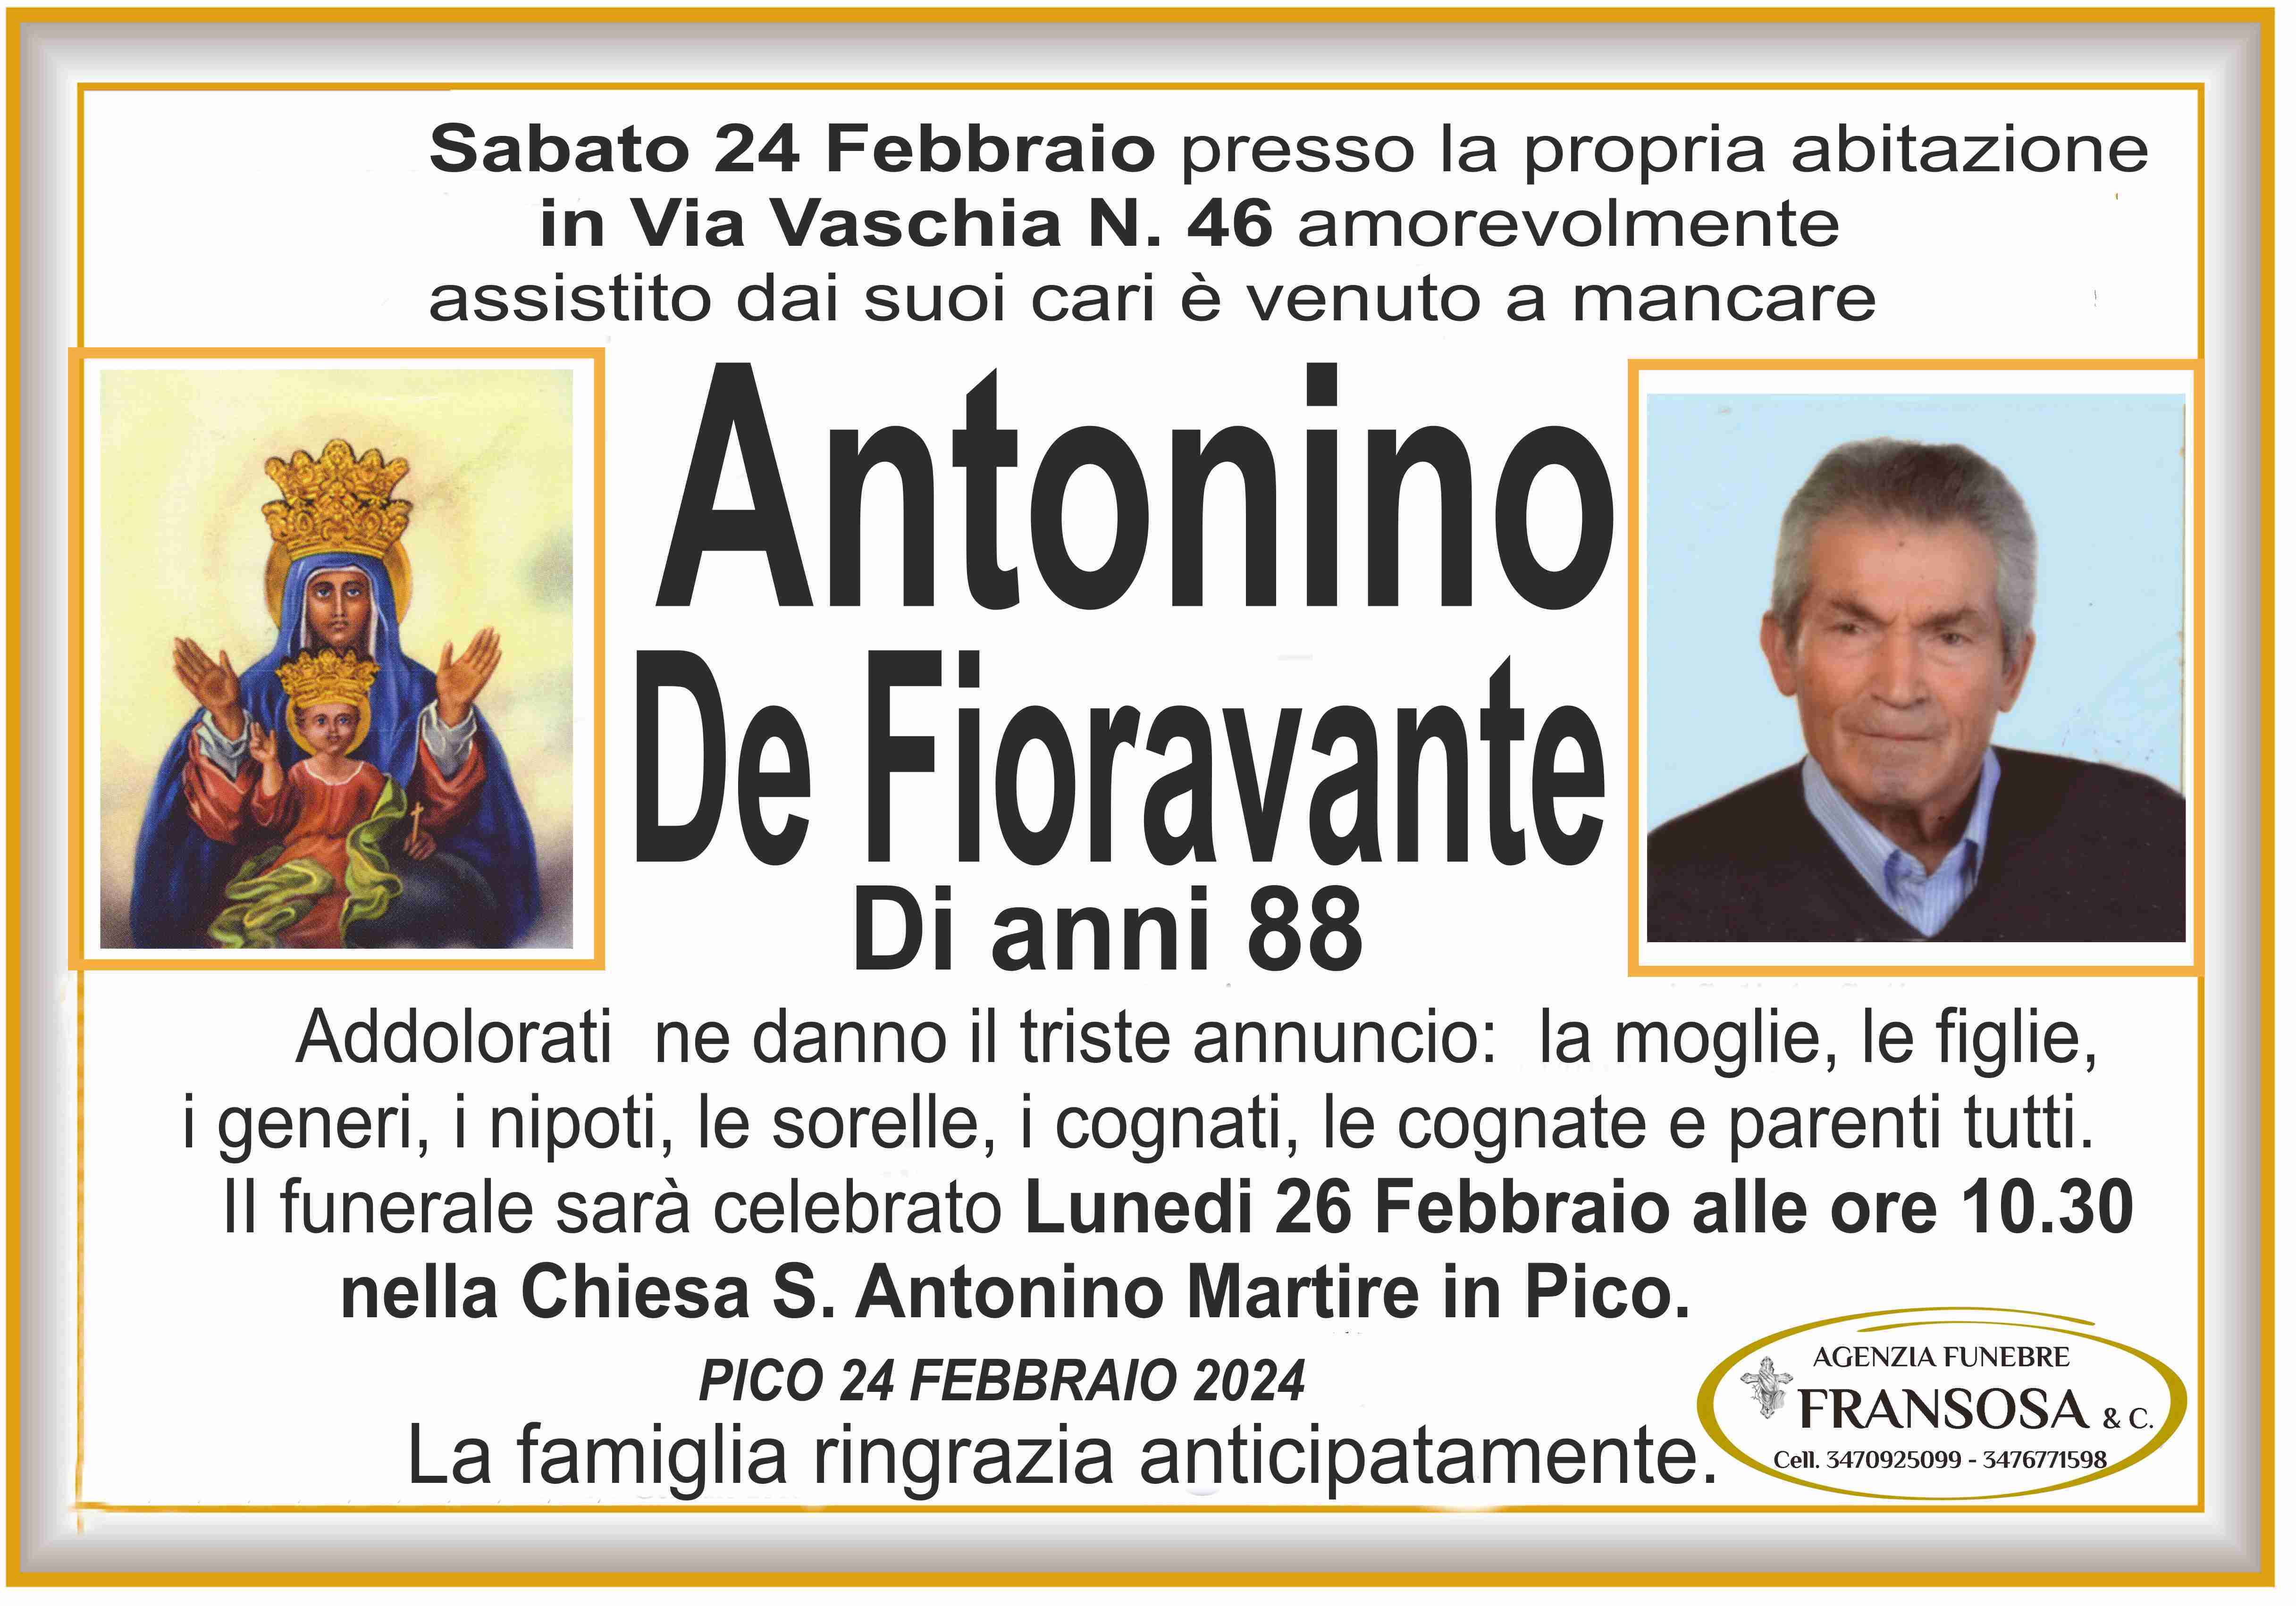 Antonino De Fioravante